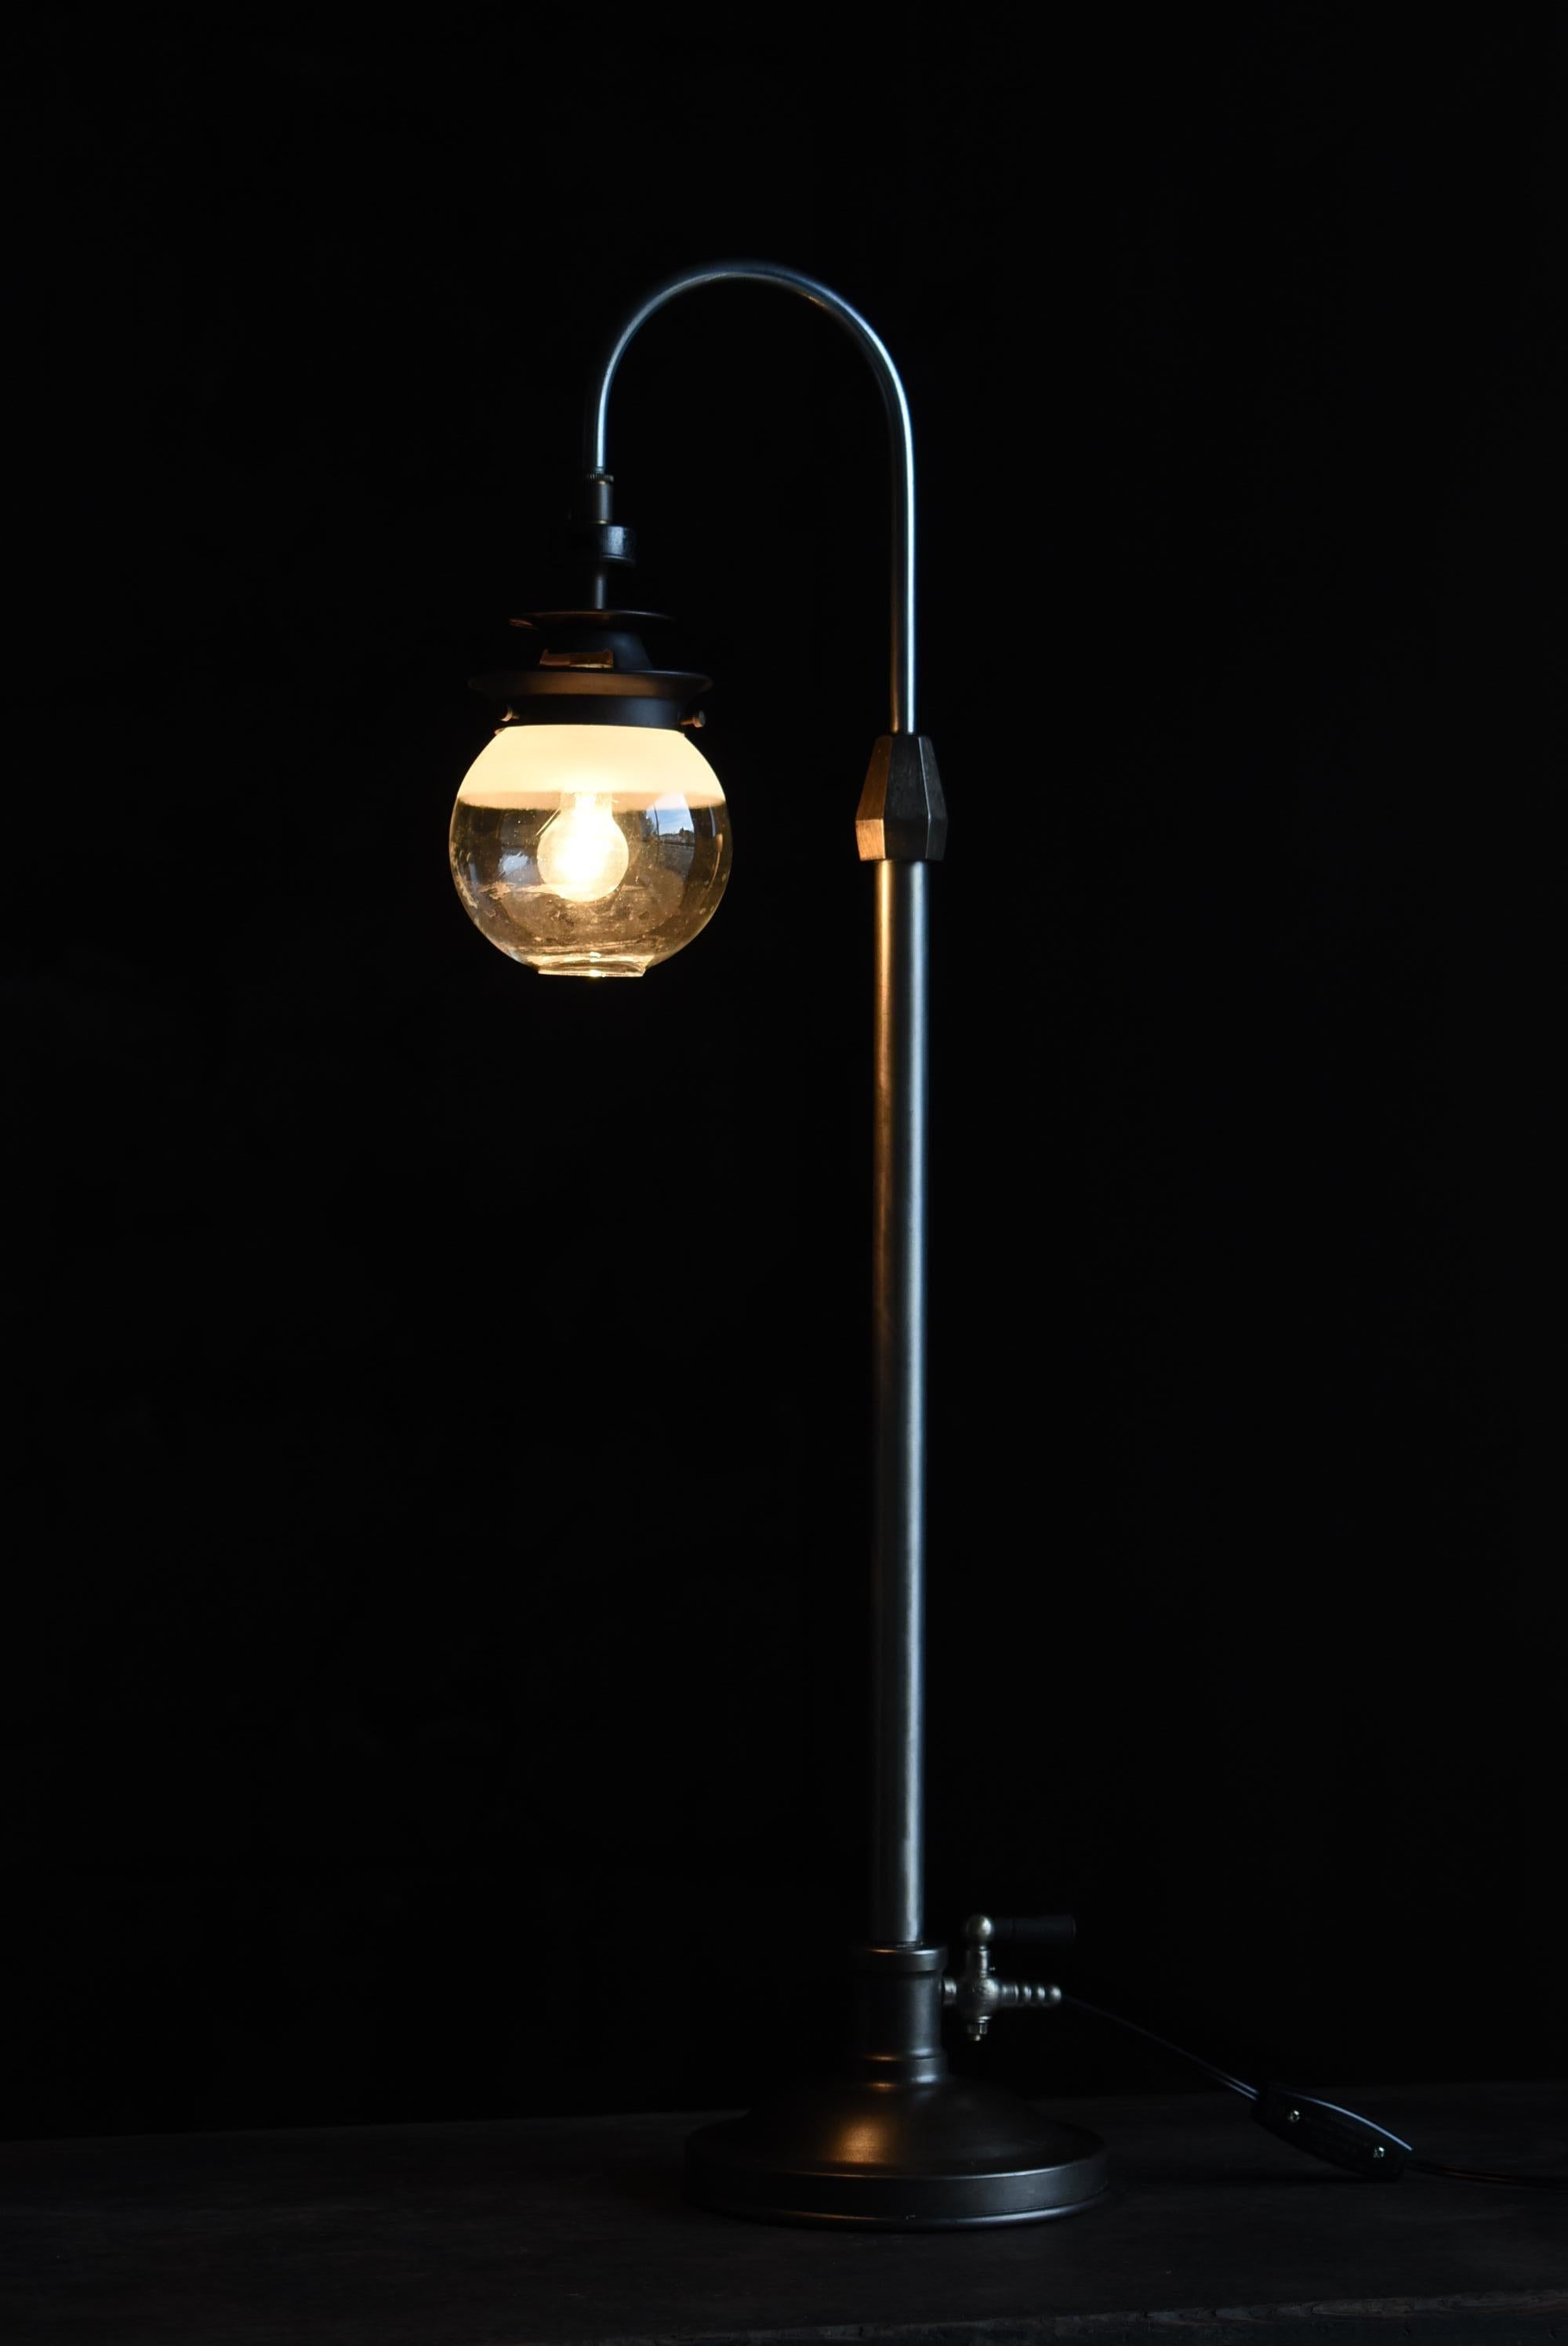 Il s'agit d'une très ancienne lampe de table fabriquée au Japon.
Cette lampe date du début de la période Showa (années 1920-1940).
Il est fabriqué en fer et en laiton.
L'abat-jour est en verre.

Le design/One est très moderne.
Elle est fabriquée de